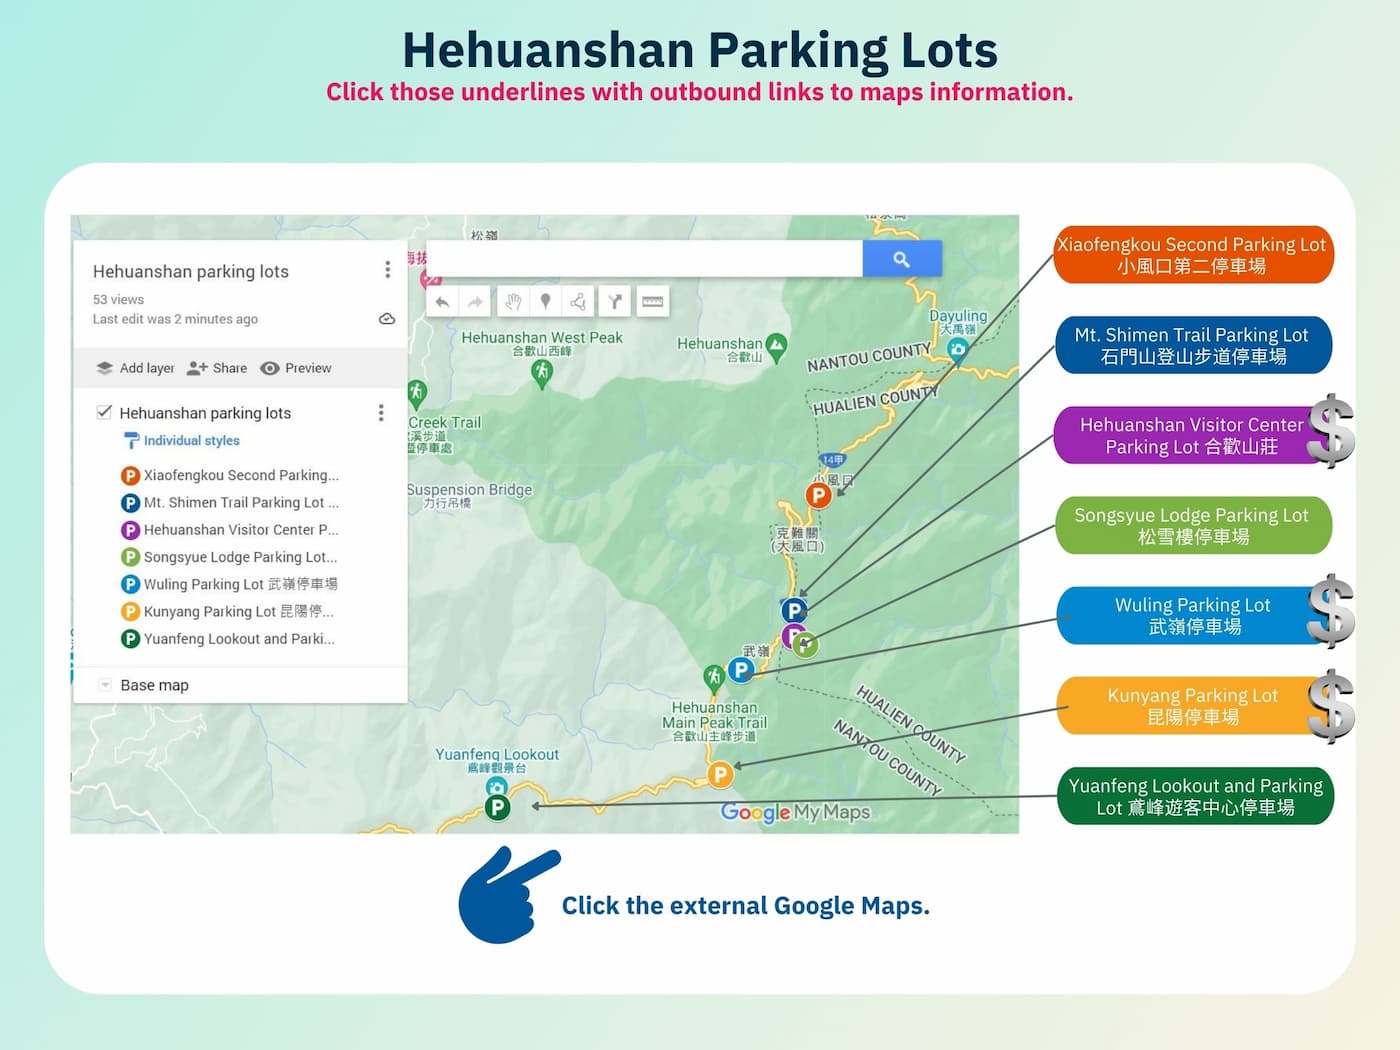 Hehuanshan parking lots